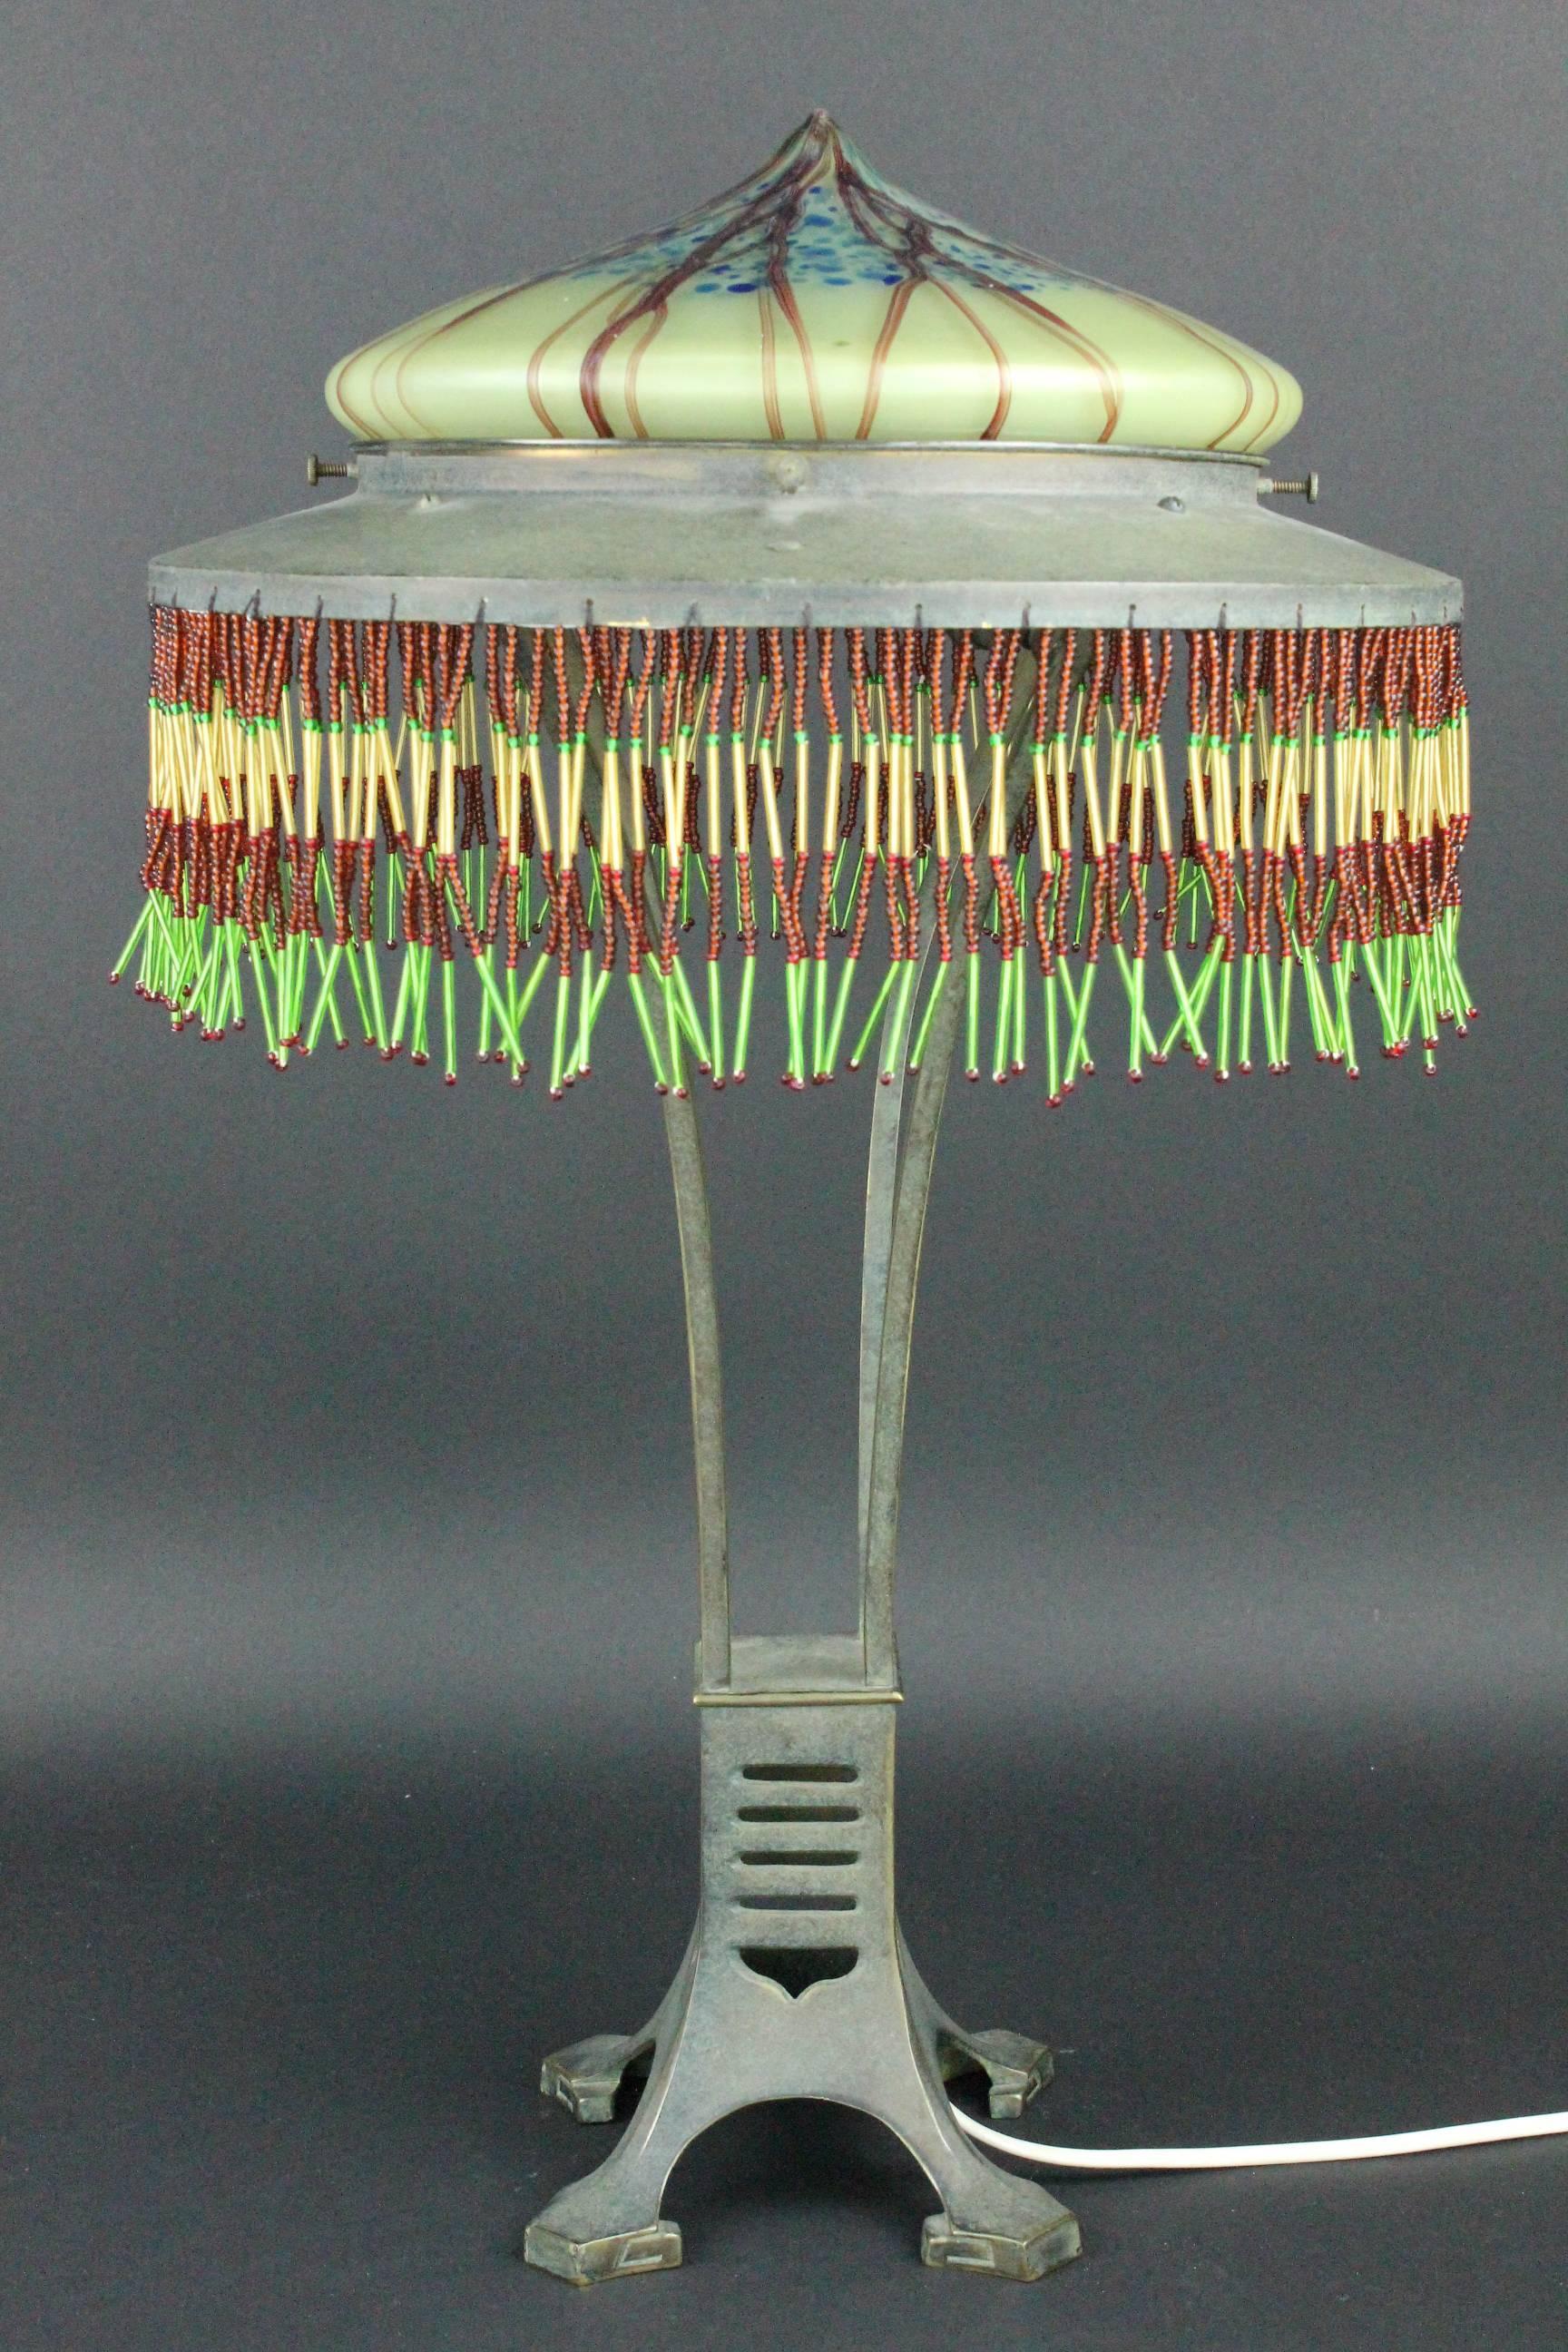 Eine sehr ungewöhnliche und seltene Tischlampe. Österreichischer Jugendstil-Lampenschirm aus dem frühen 20. Jahrhundert.
Grün patinierte Bronze. Schöner Originalzustand. Der Glasschirm mit kleinen Kerben. Diese kleinen Schrammen sind völlig